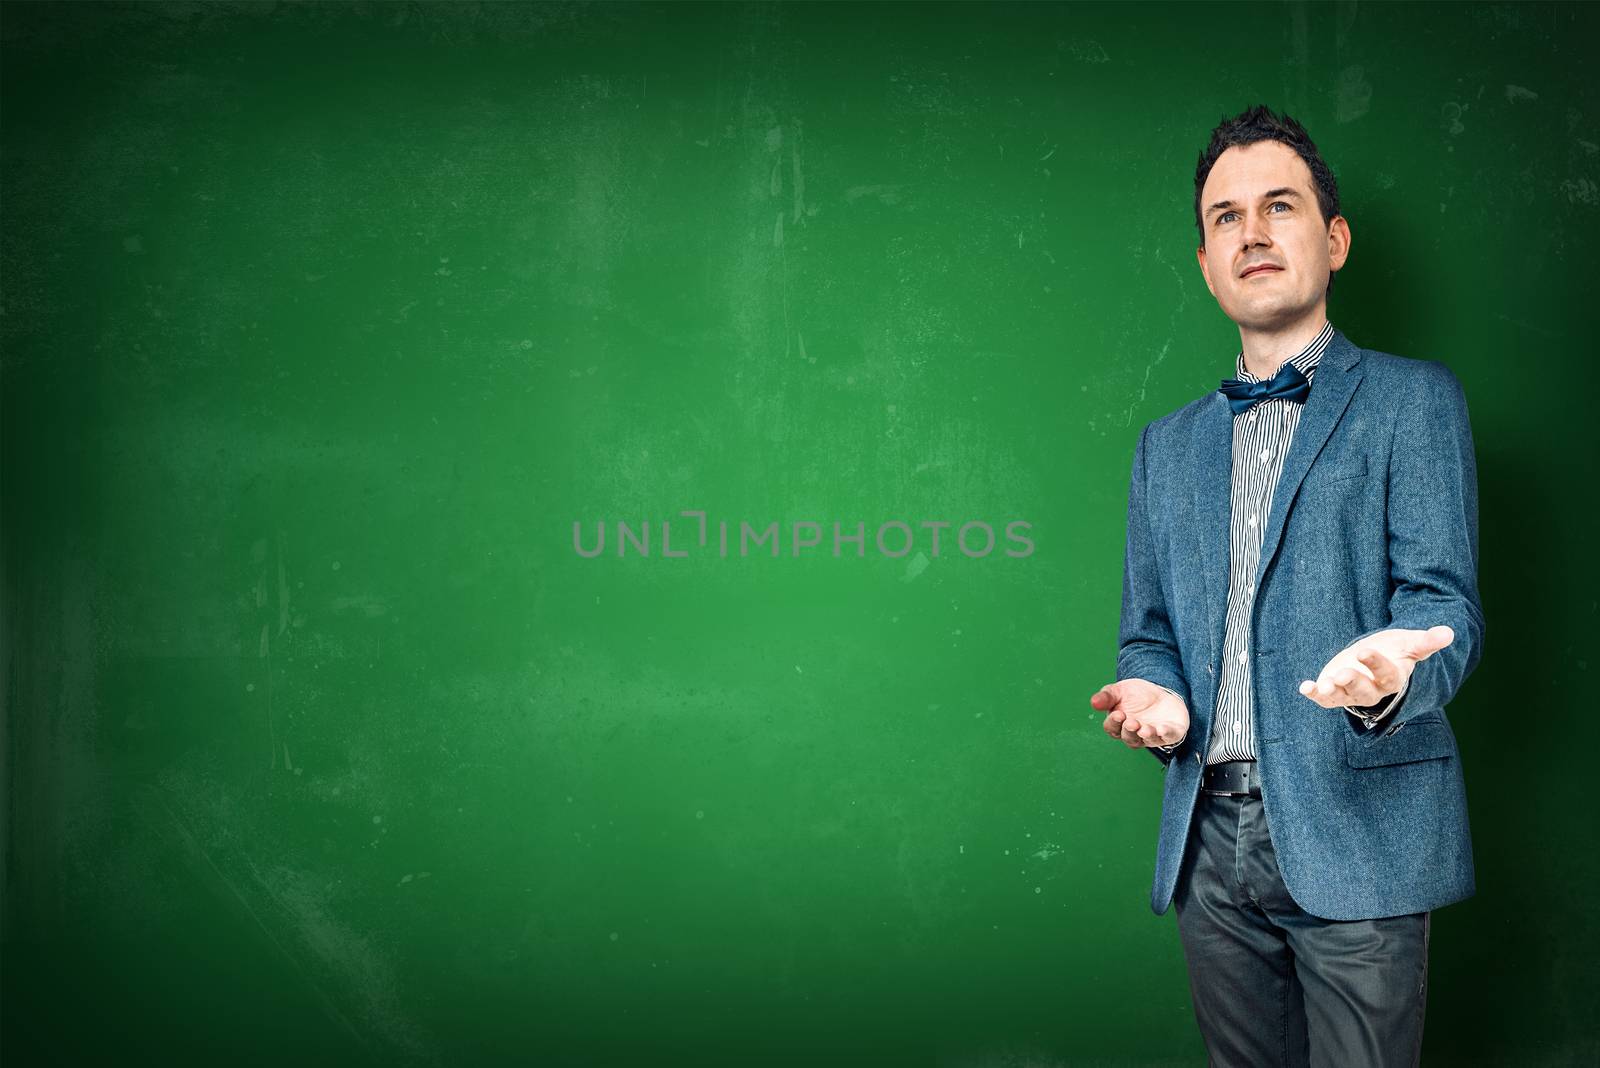 Man teaching on a chalkboard by Sportactive